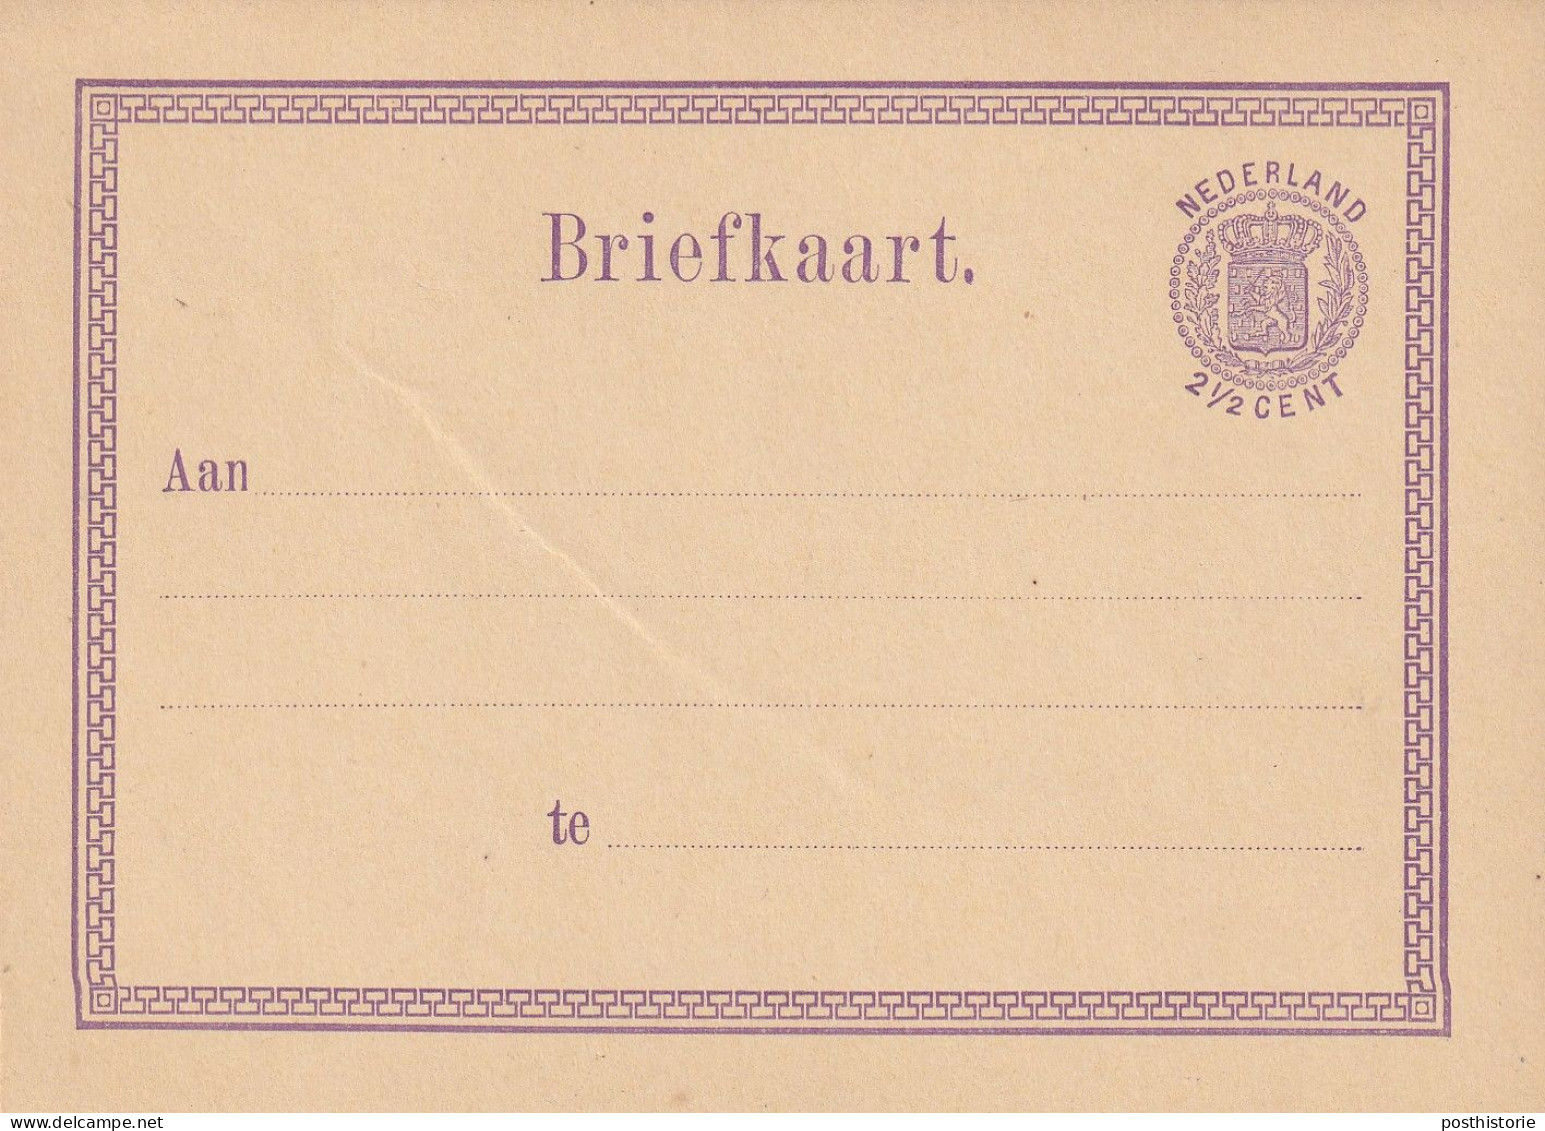 11 ongebruikte briefkaarten 1872/ 1876